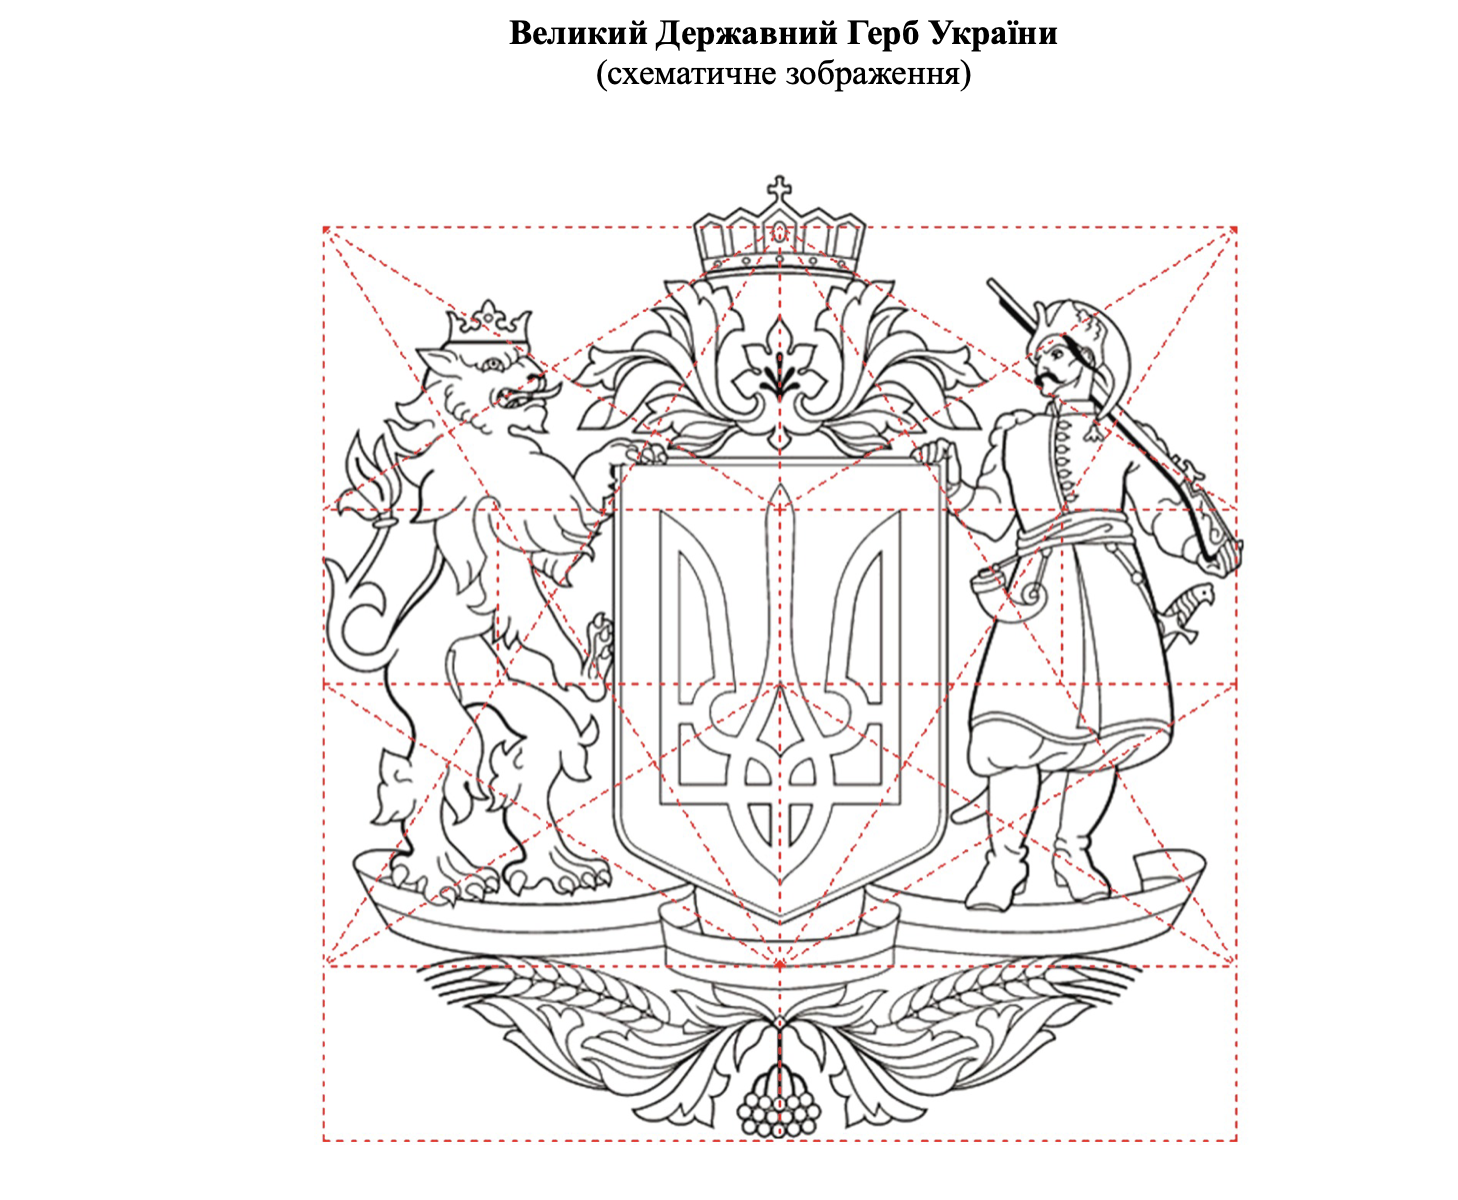 Зеленский предлагает сделать Большим гербом Украины рисунок, утвержденный при Юлии Тимошенко. Фото